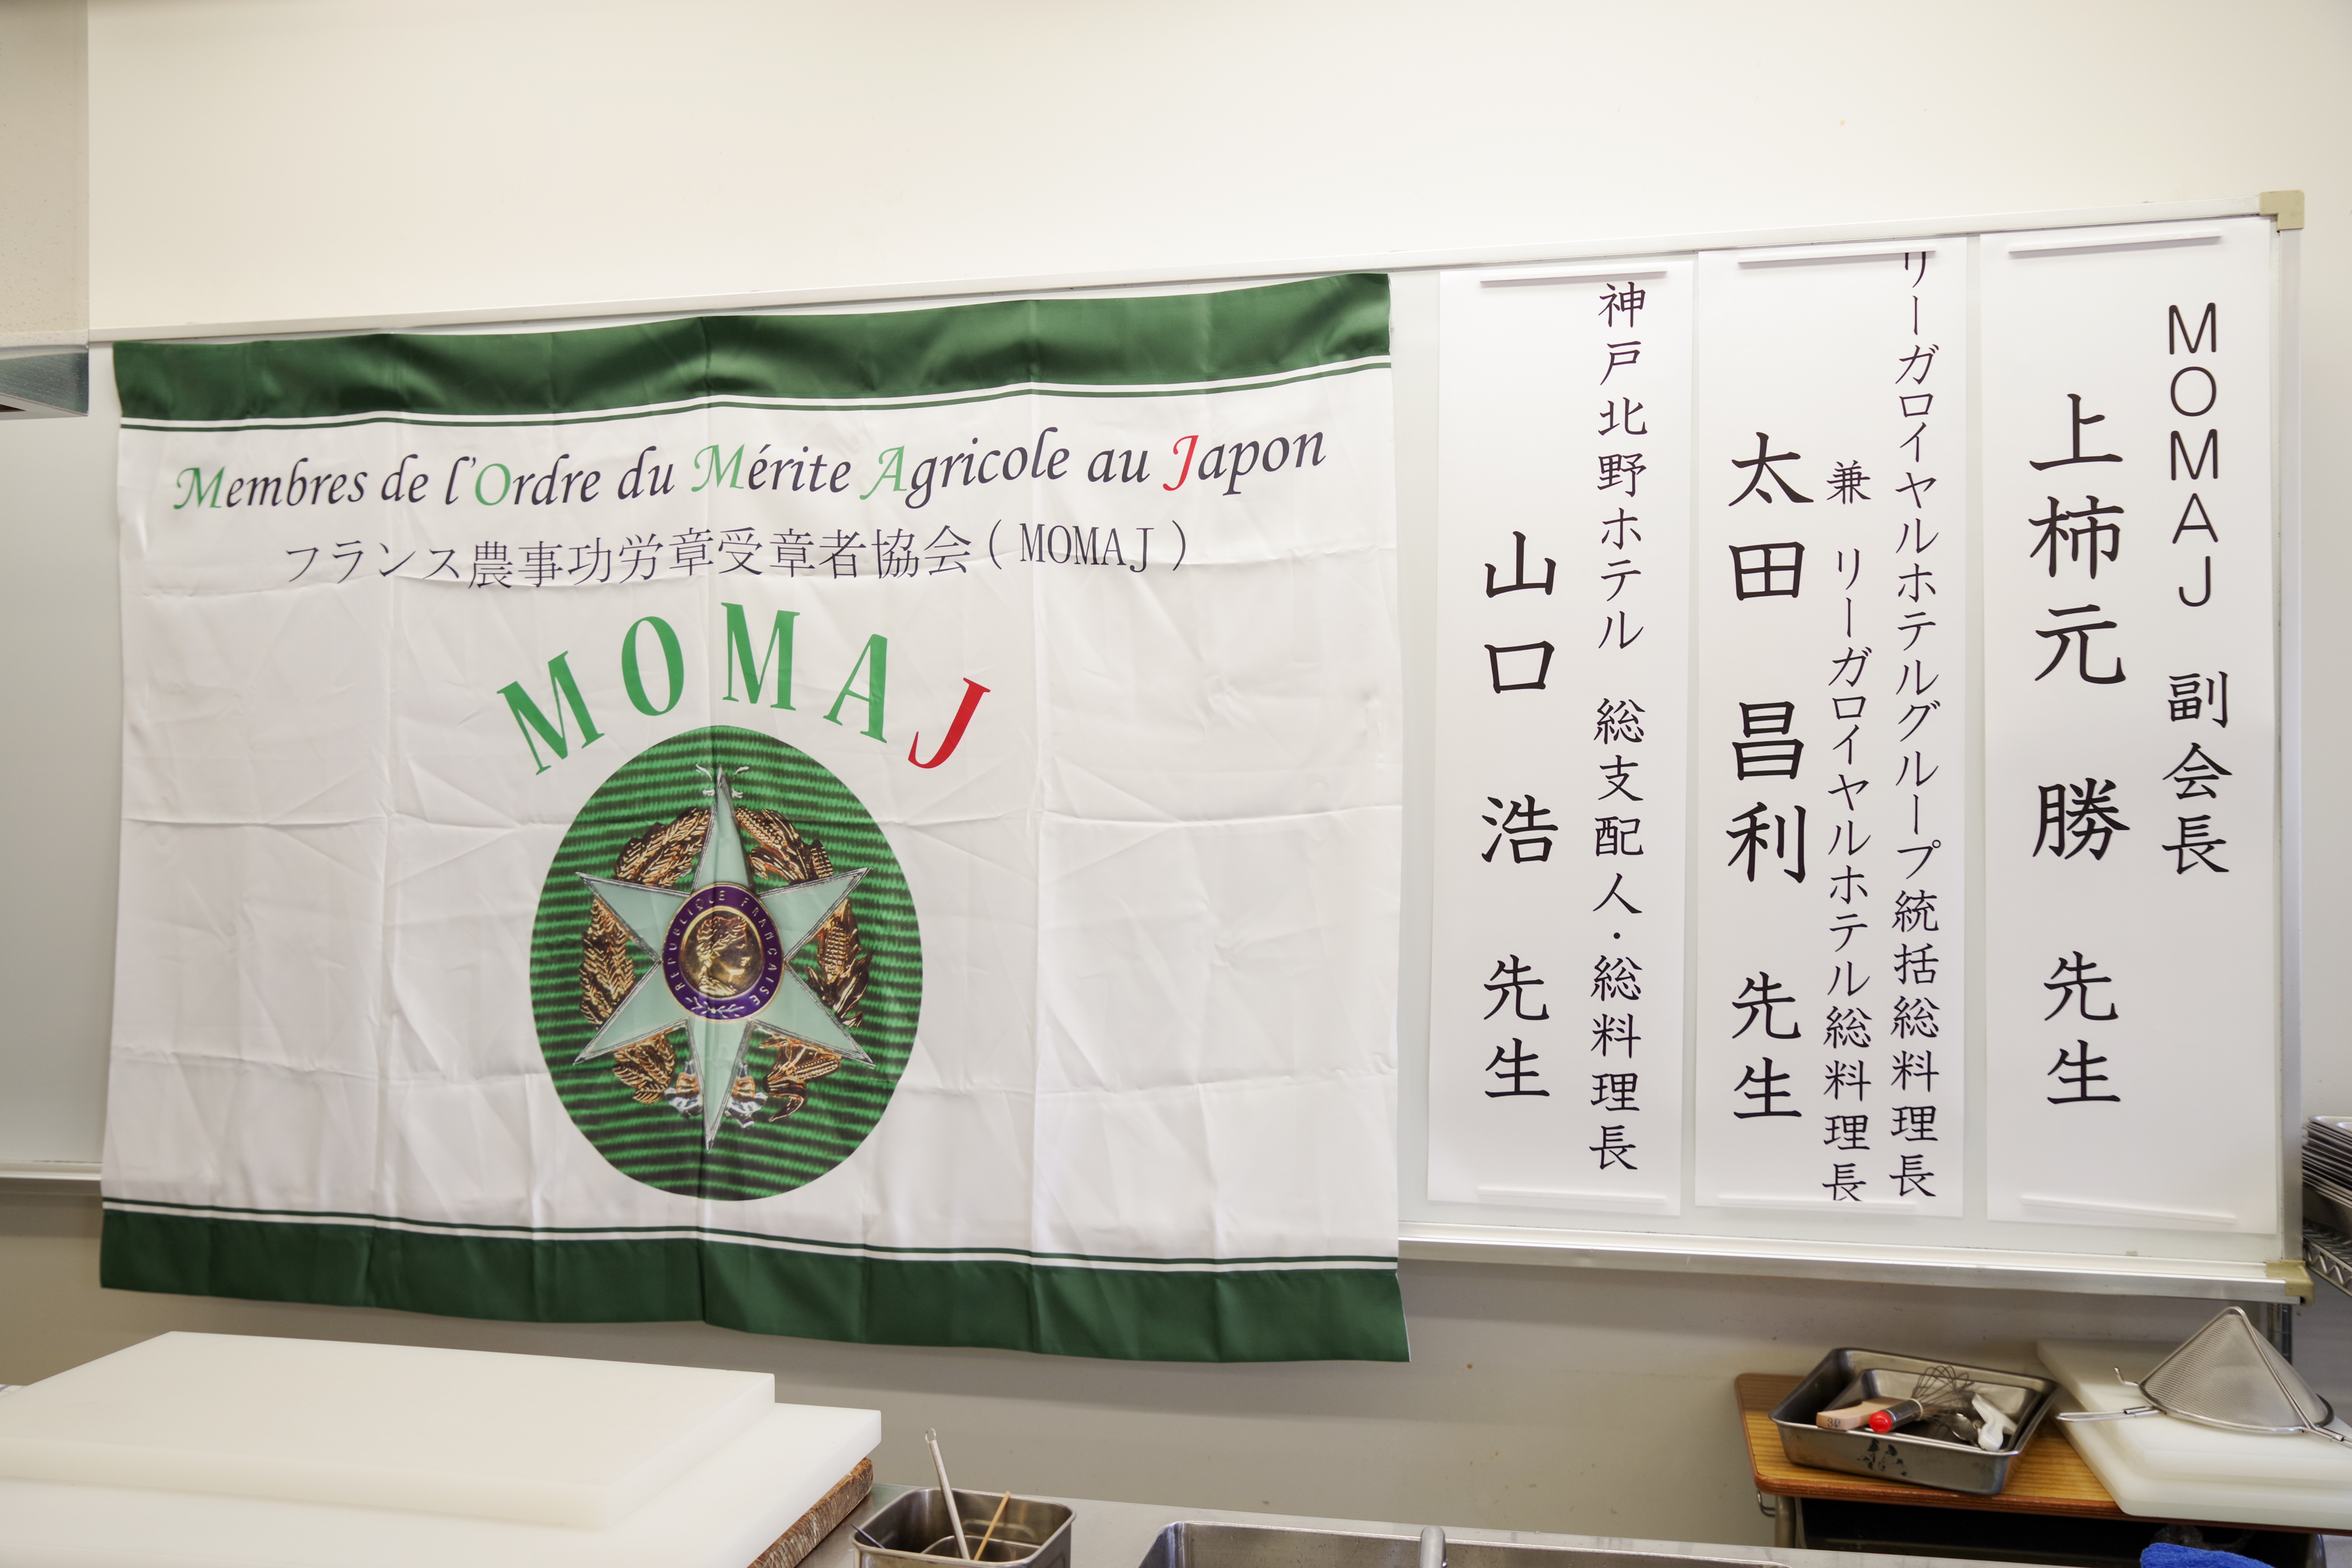 MOMAJとして初めての大阪での講習会は、<br>お陰様で大成功裏に了えることが出来ました！